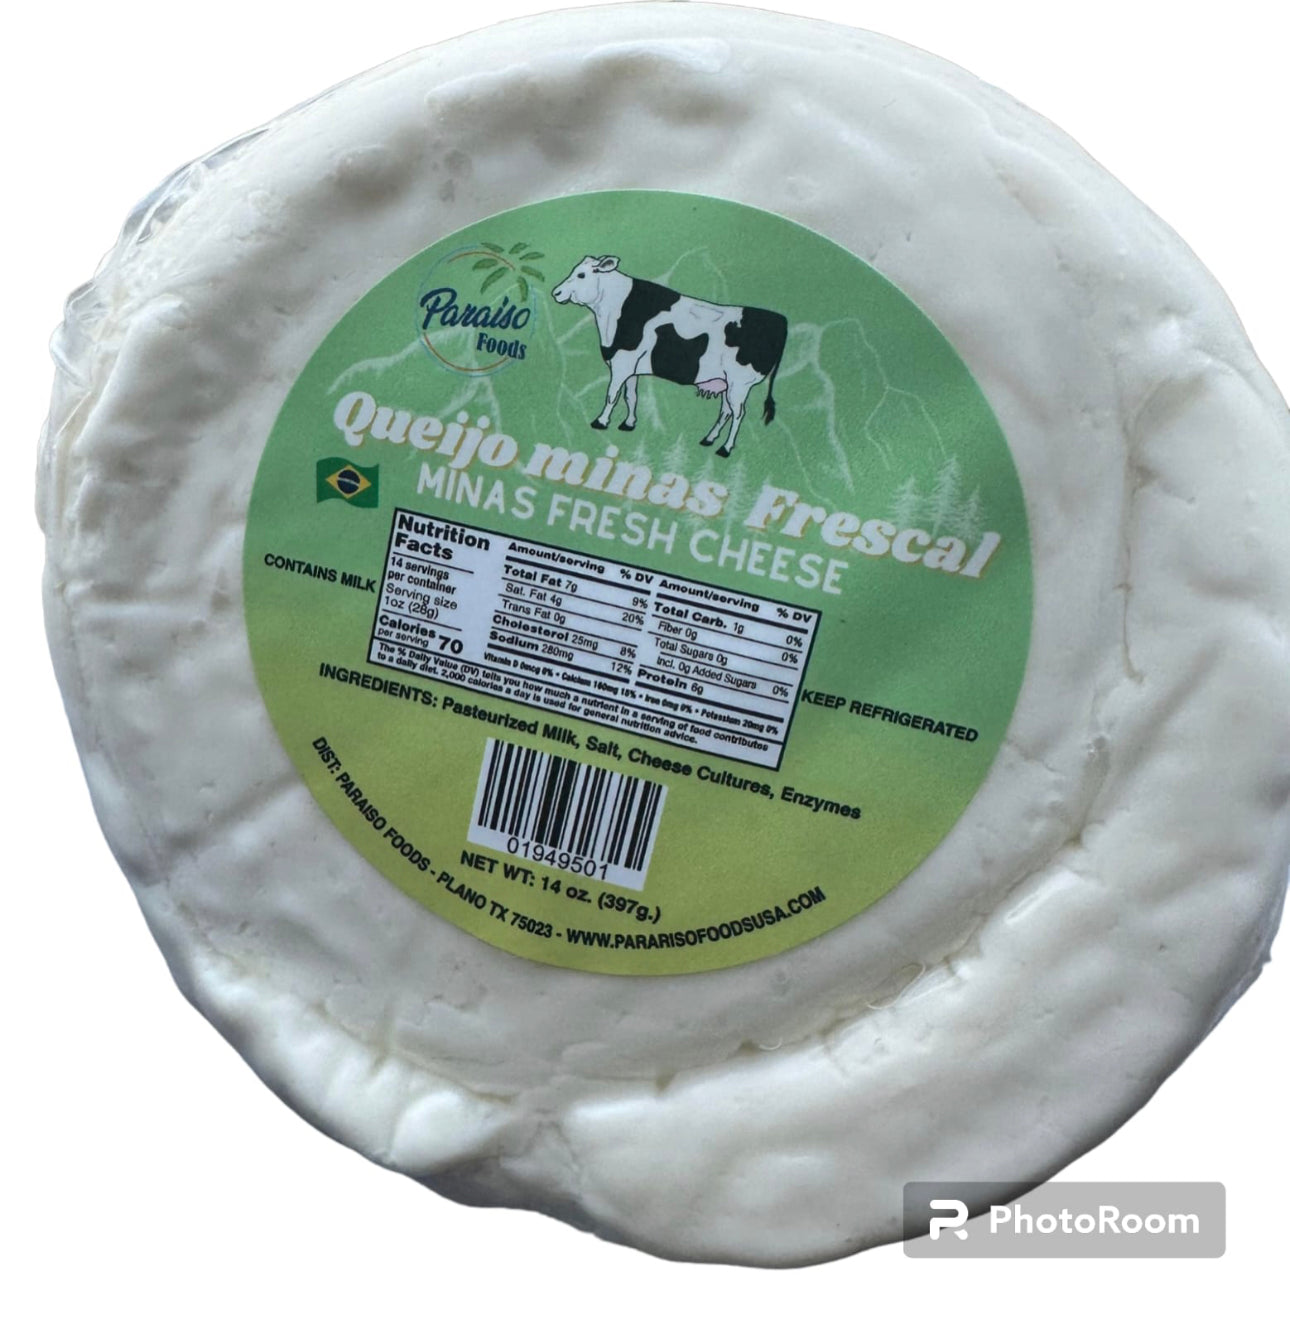 Queijo Minas Frescal 397g. Minas fresh cheese.